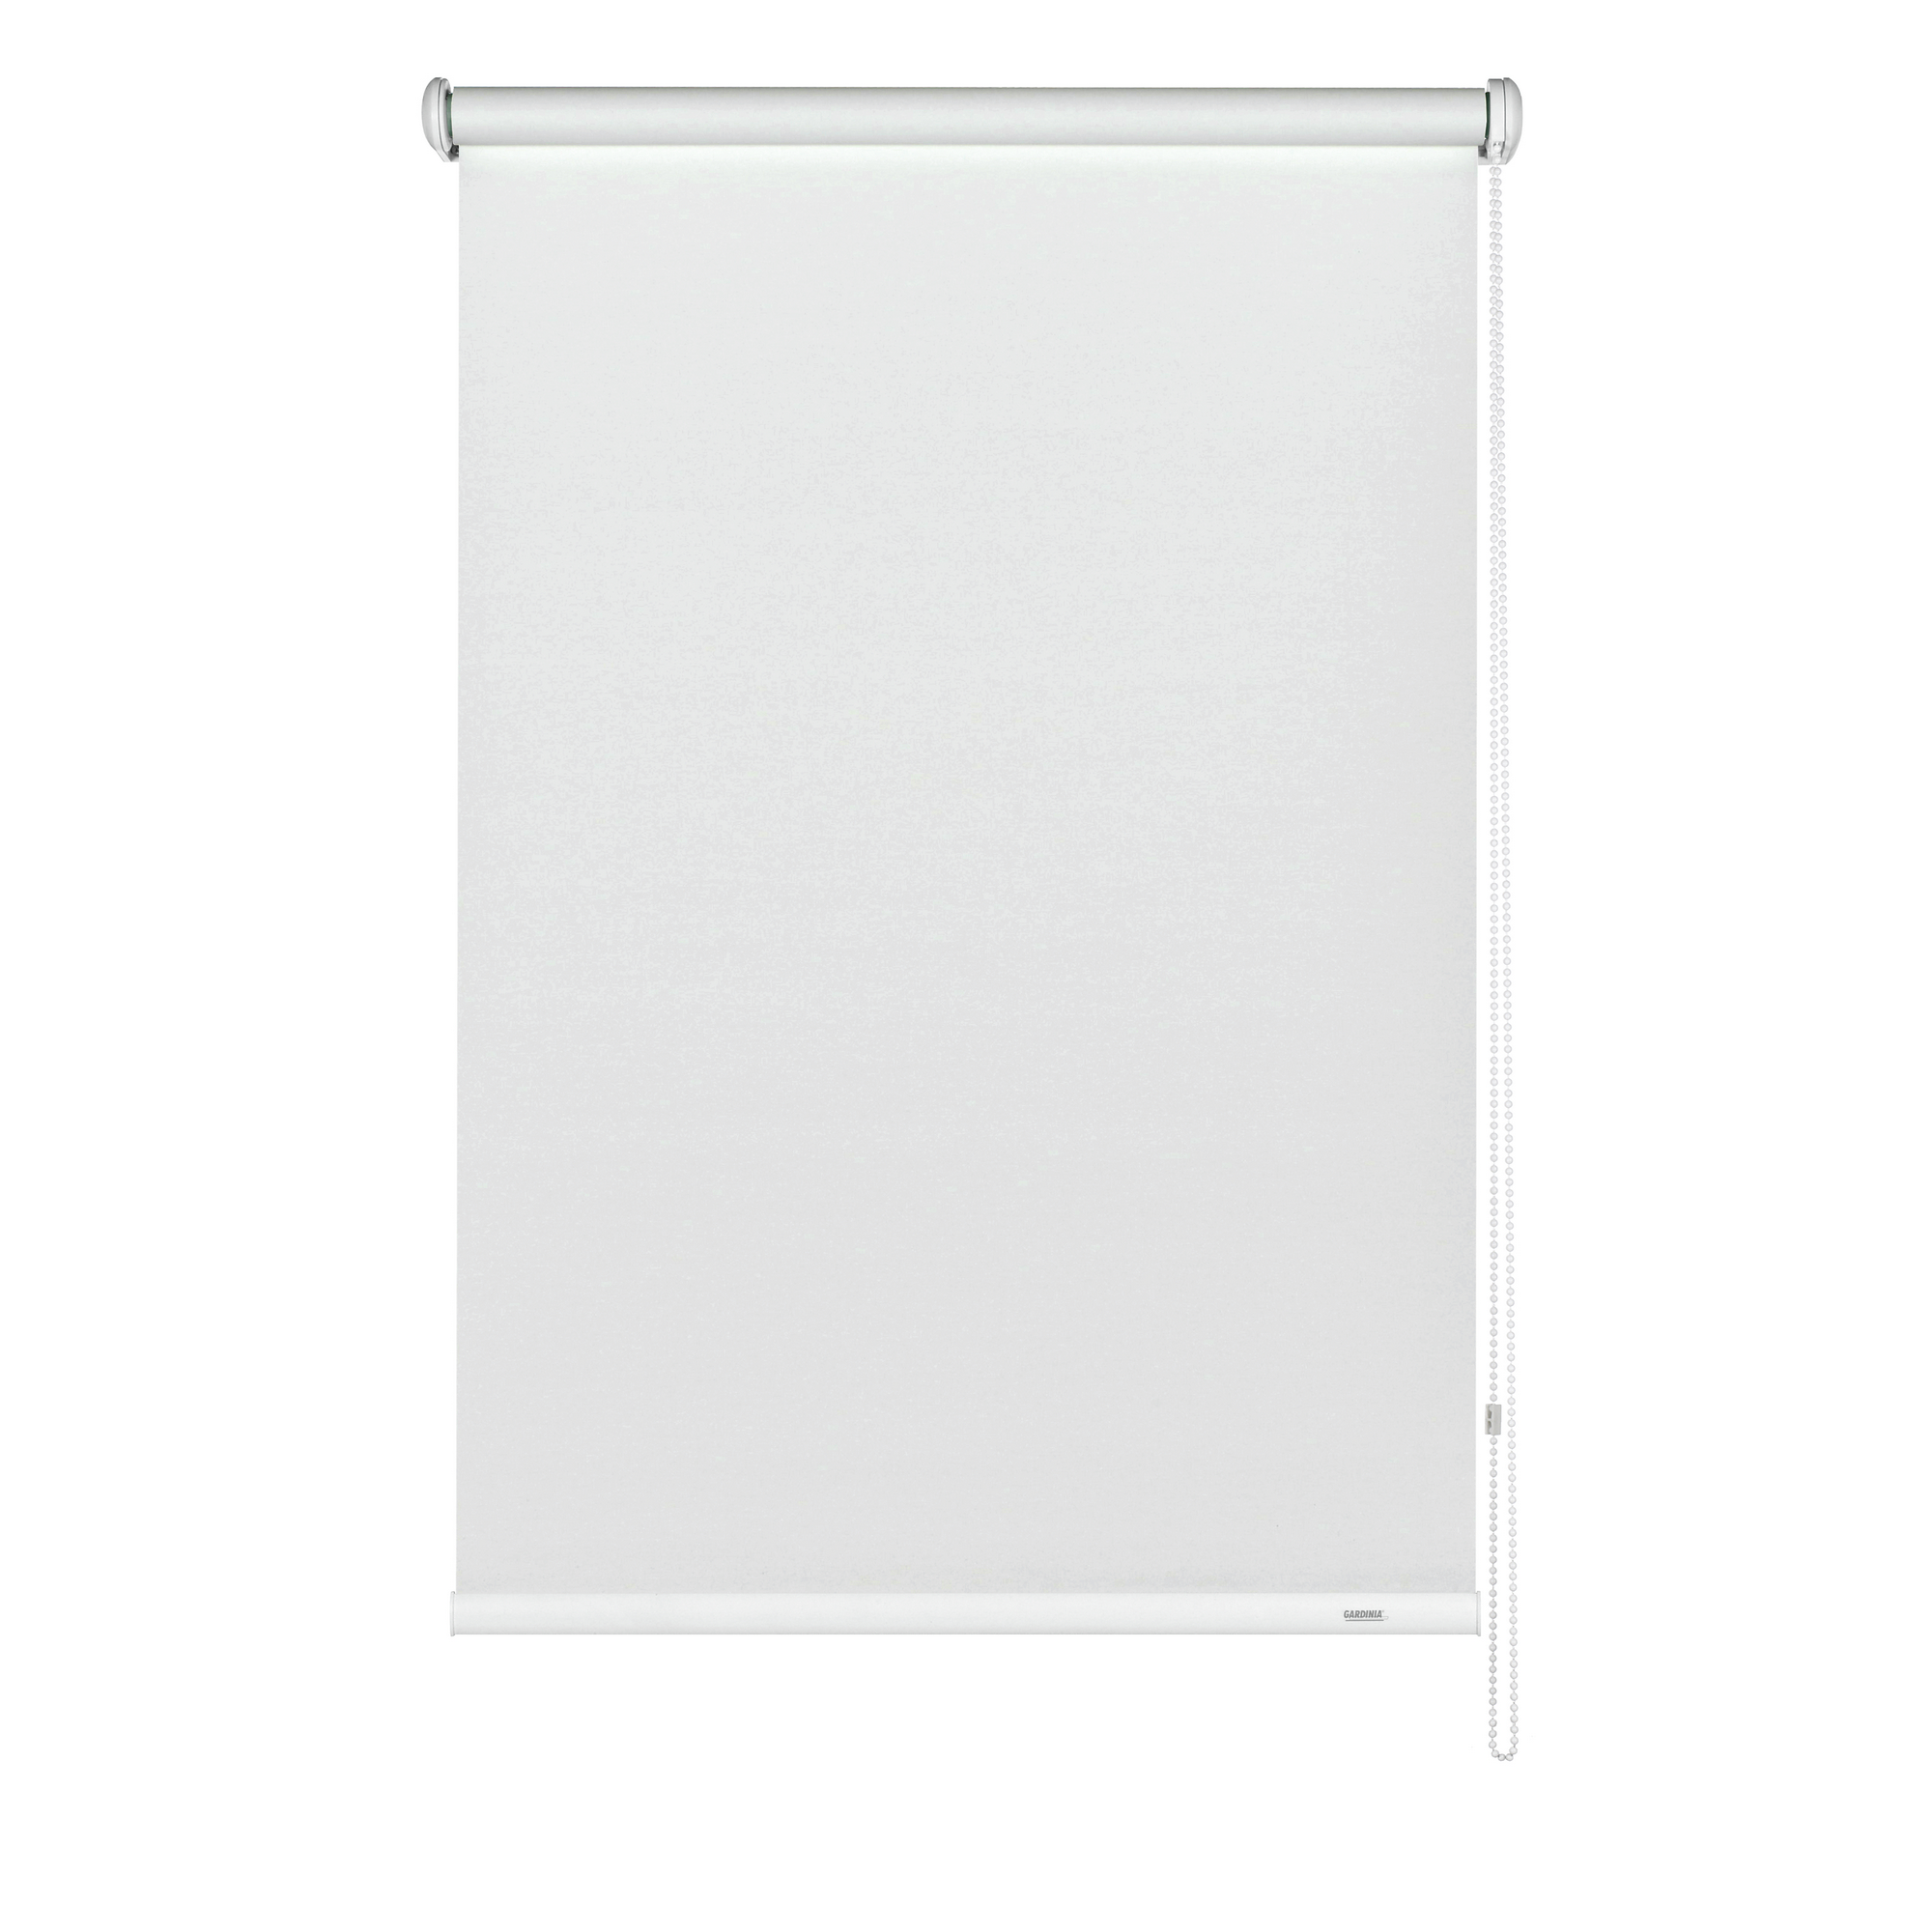 Seitenzug-Rollo 'Abdunklung' weiß 202 x 180 cm + product picture